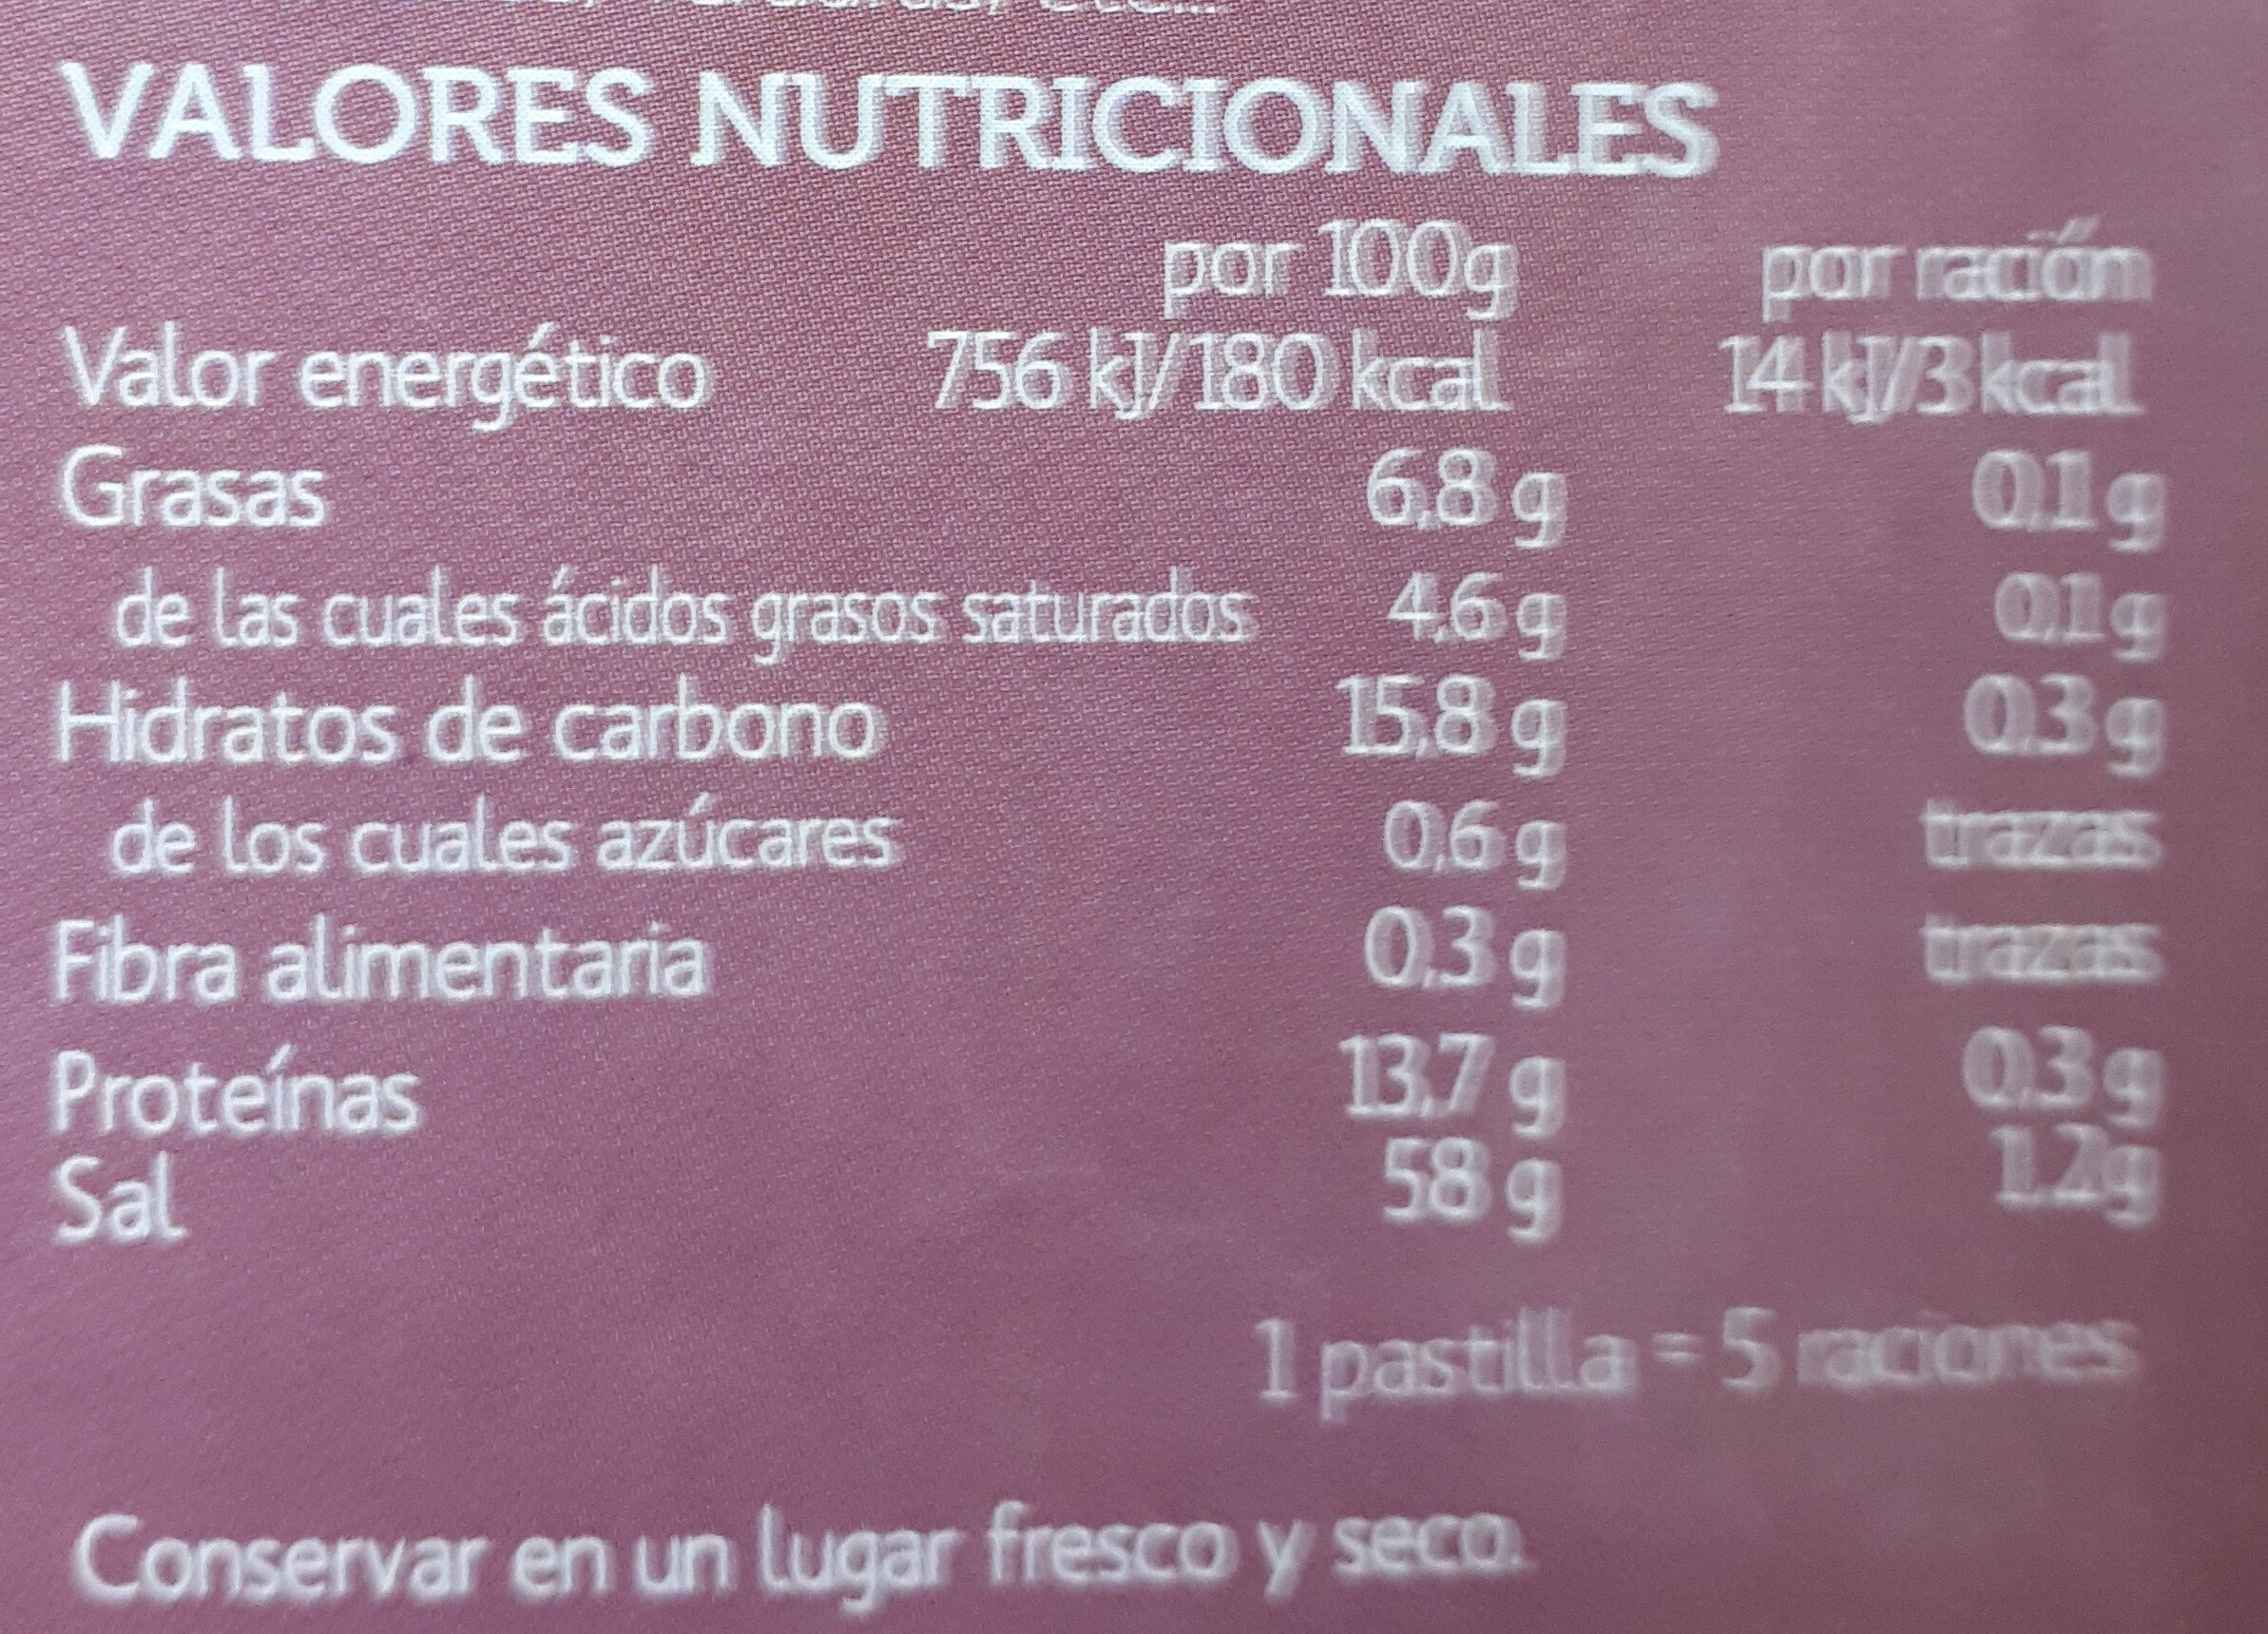 Caldo de jamon - Nutrition facts - es